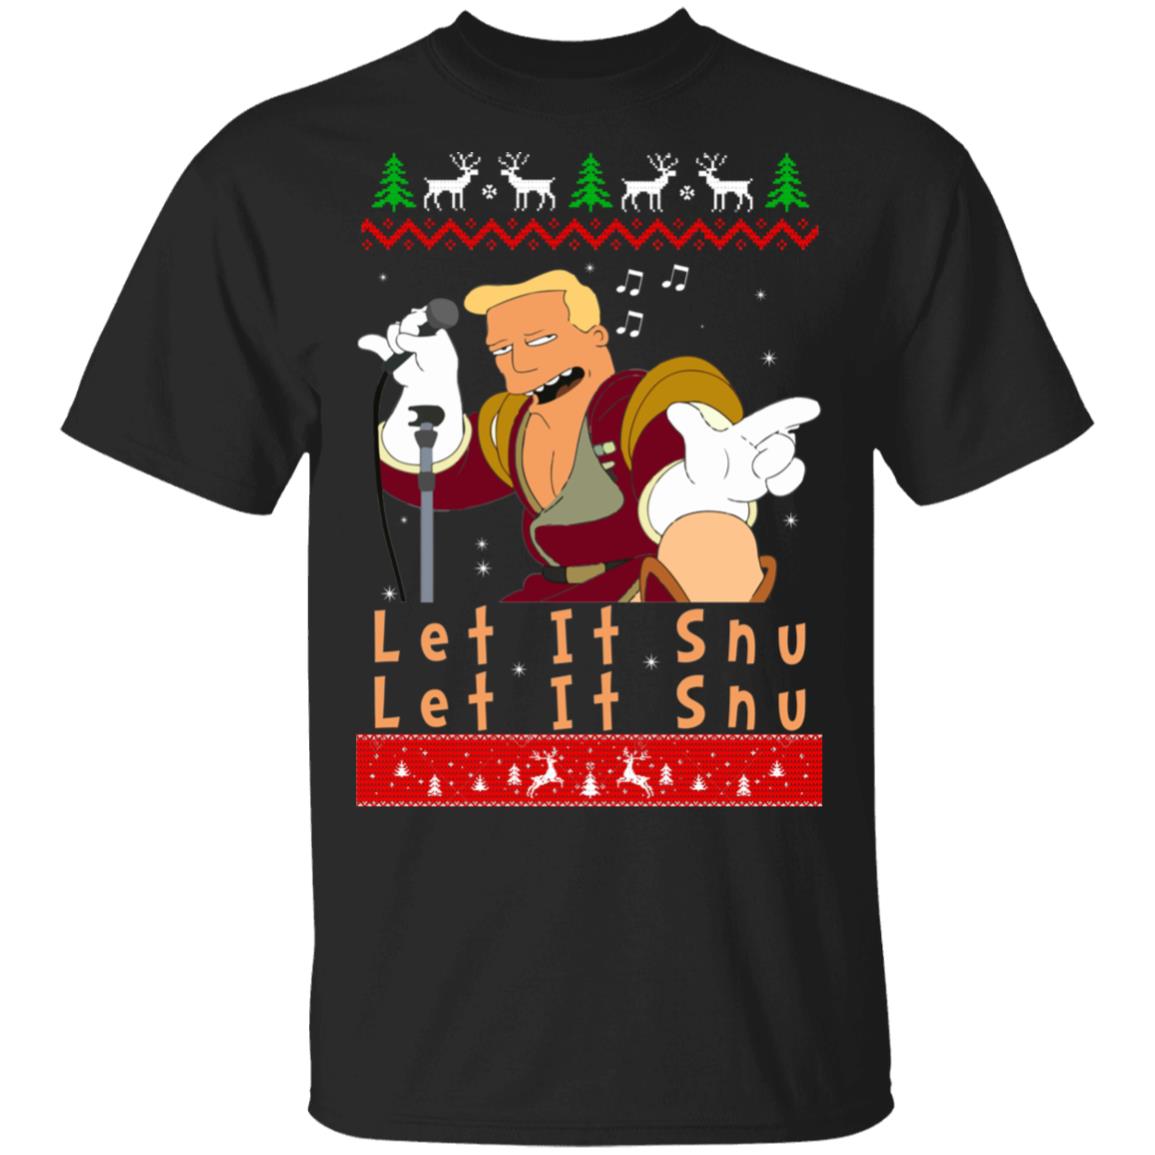 Zapp Brannigan Let It Snu Christmas Sweatshirt